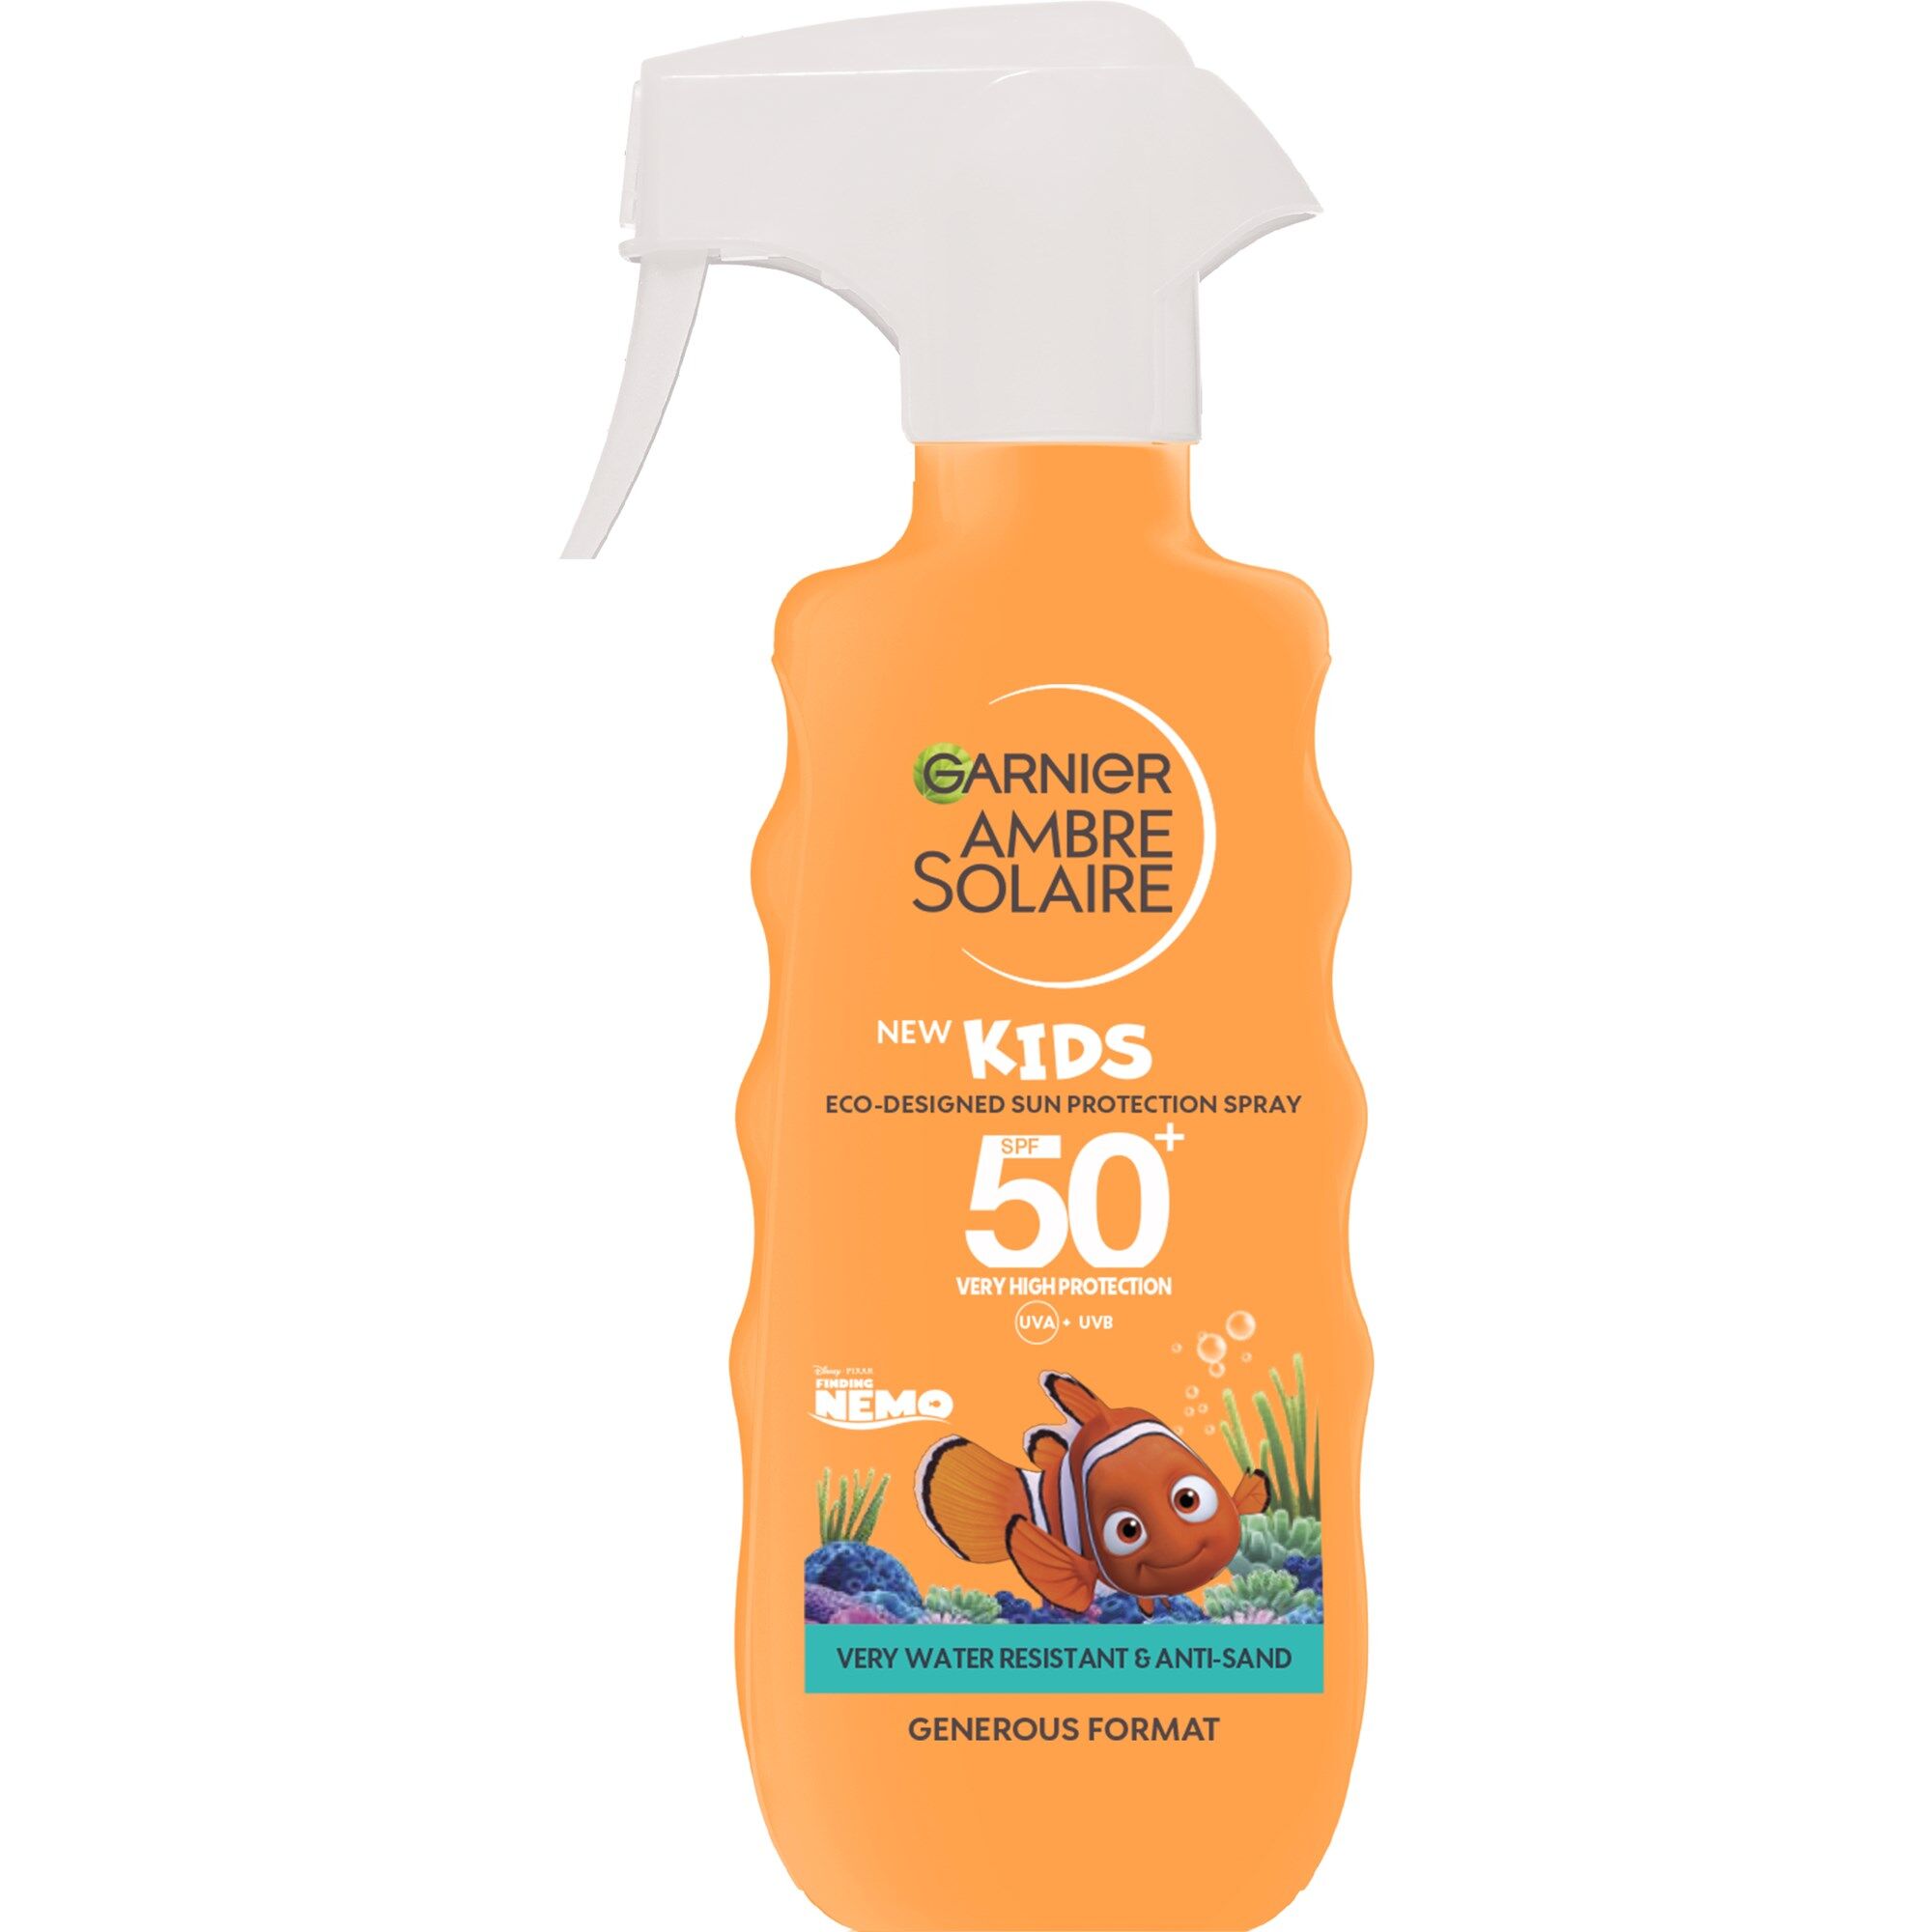 Garnier Ambre Solaire Nemo Kids Spray SPF50 300mL SPF50+